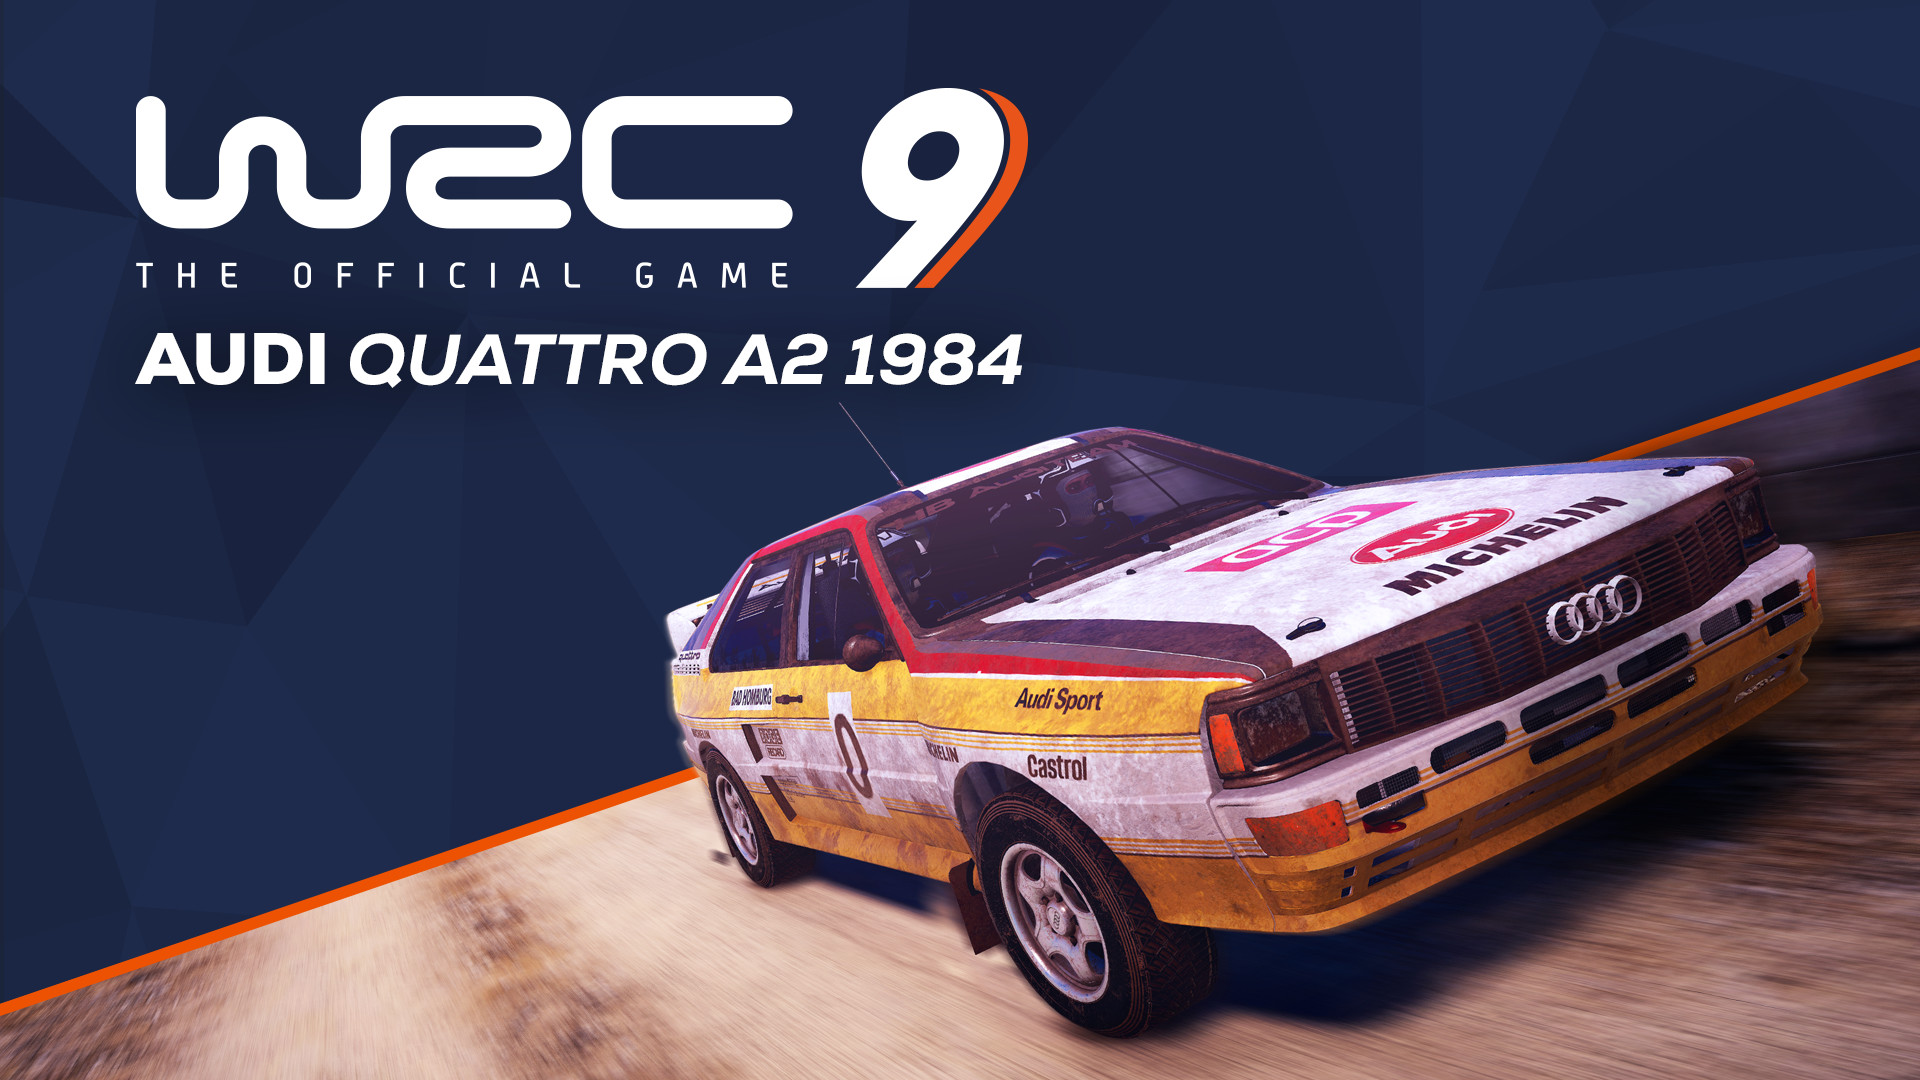 WRC 9 Audi Quattro A2 1984 Featured Screenshot #1